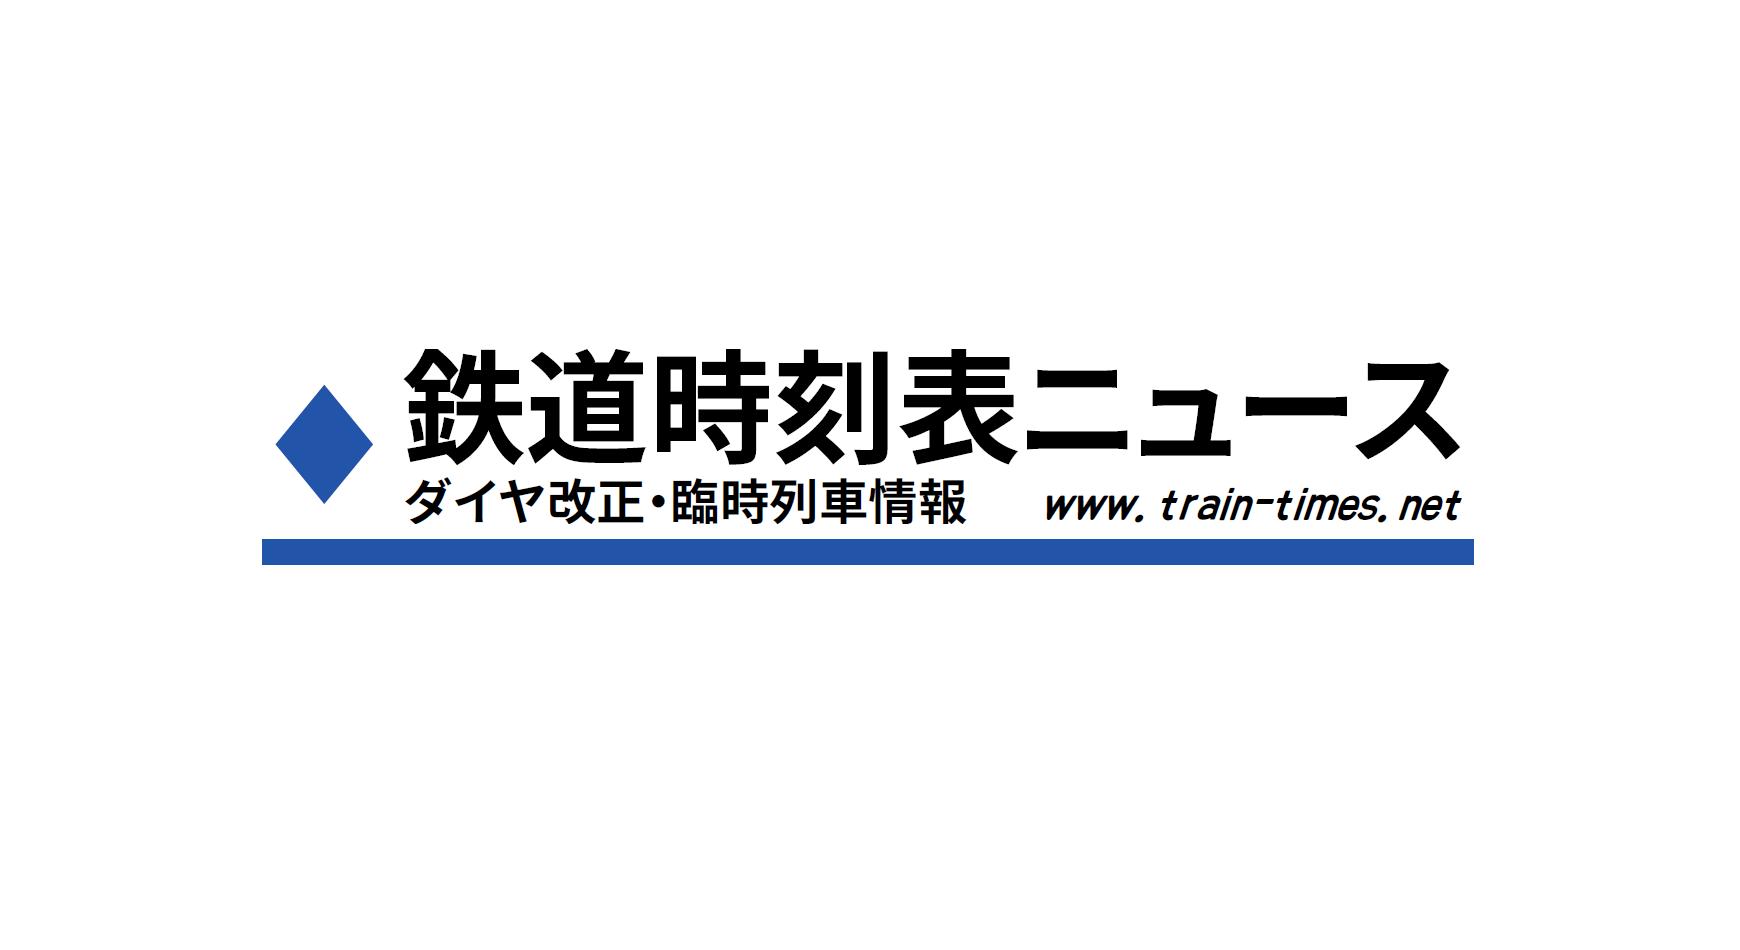 阪急 電車 時刻 表